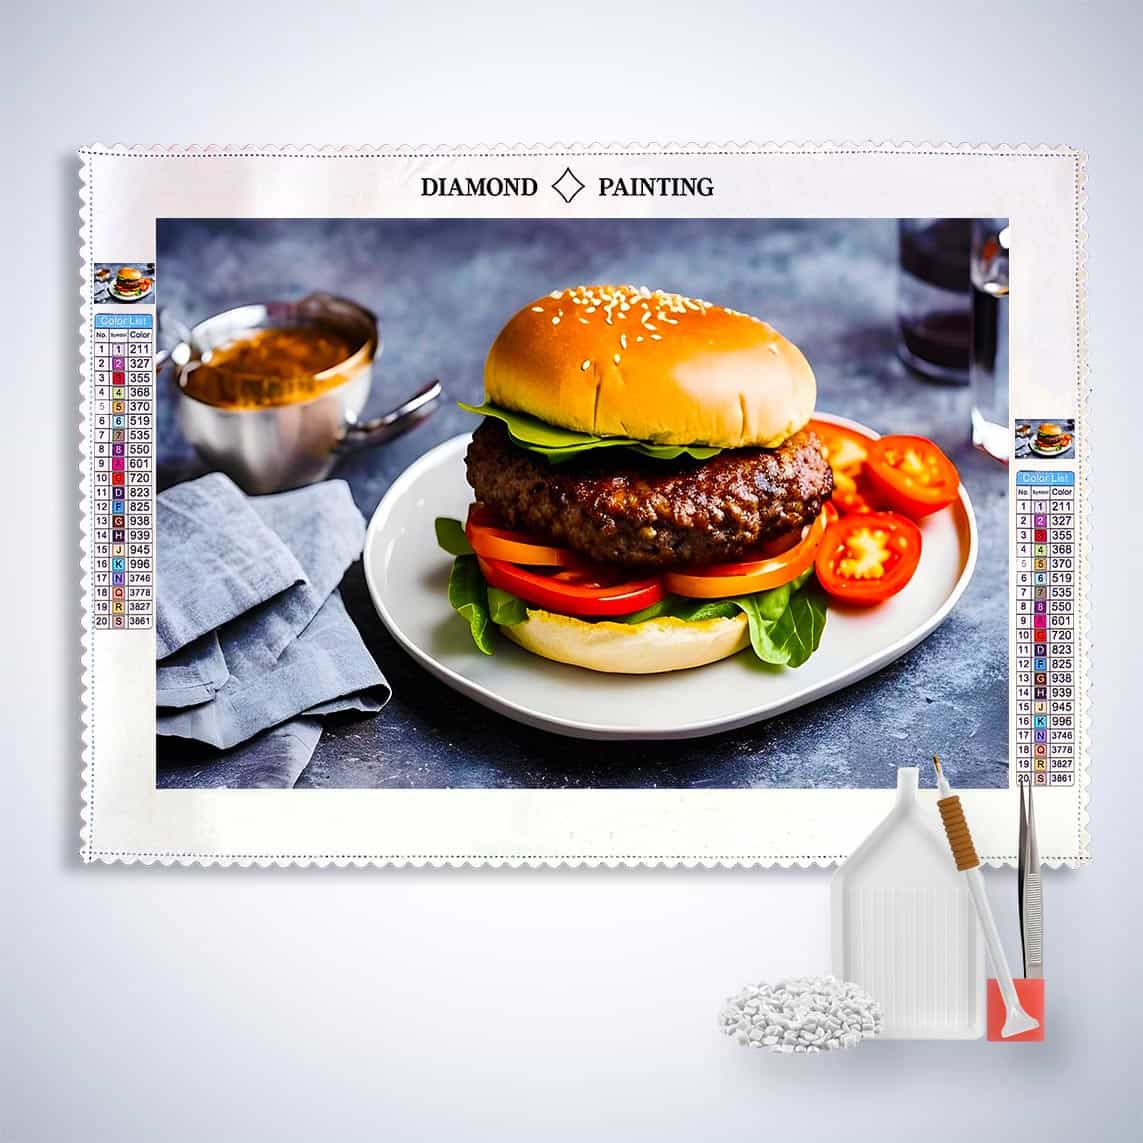 Diamond Painting - Burgerteller - gedruckt in Ultra-HD - Essen, Horizontal, Küche